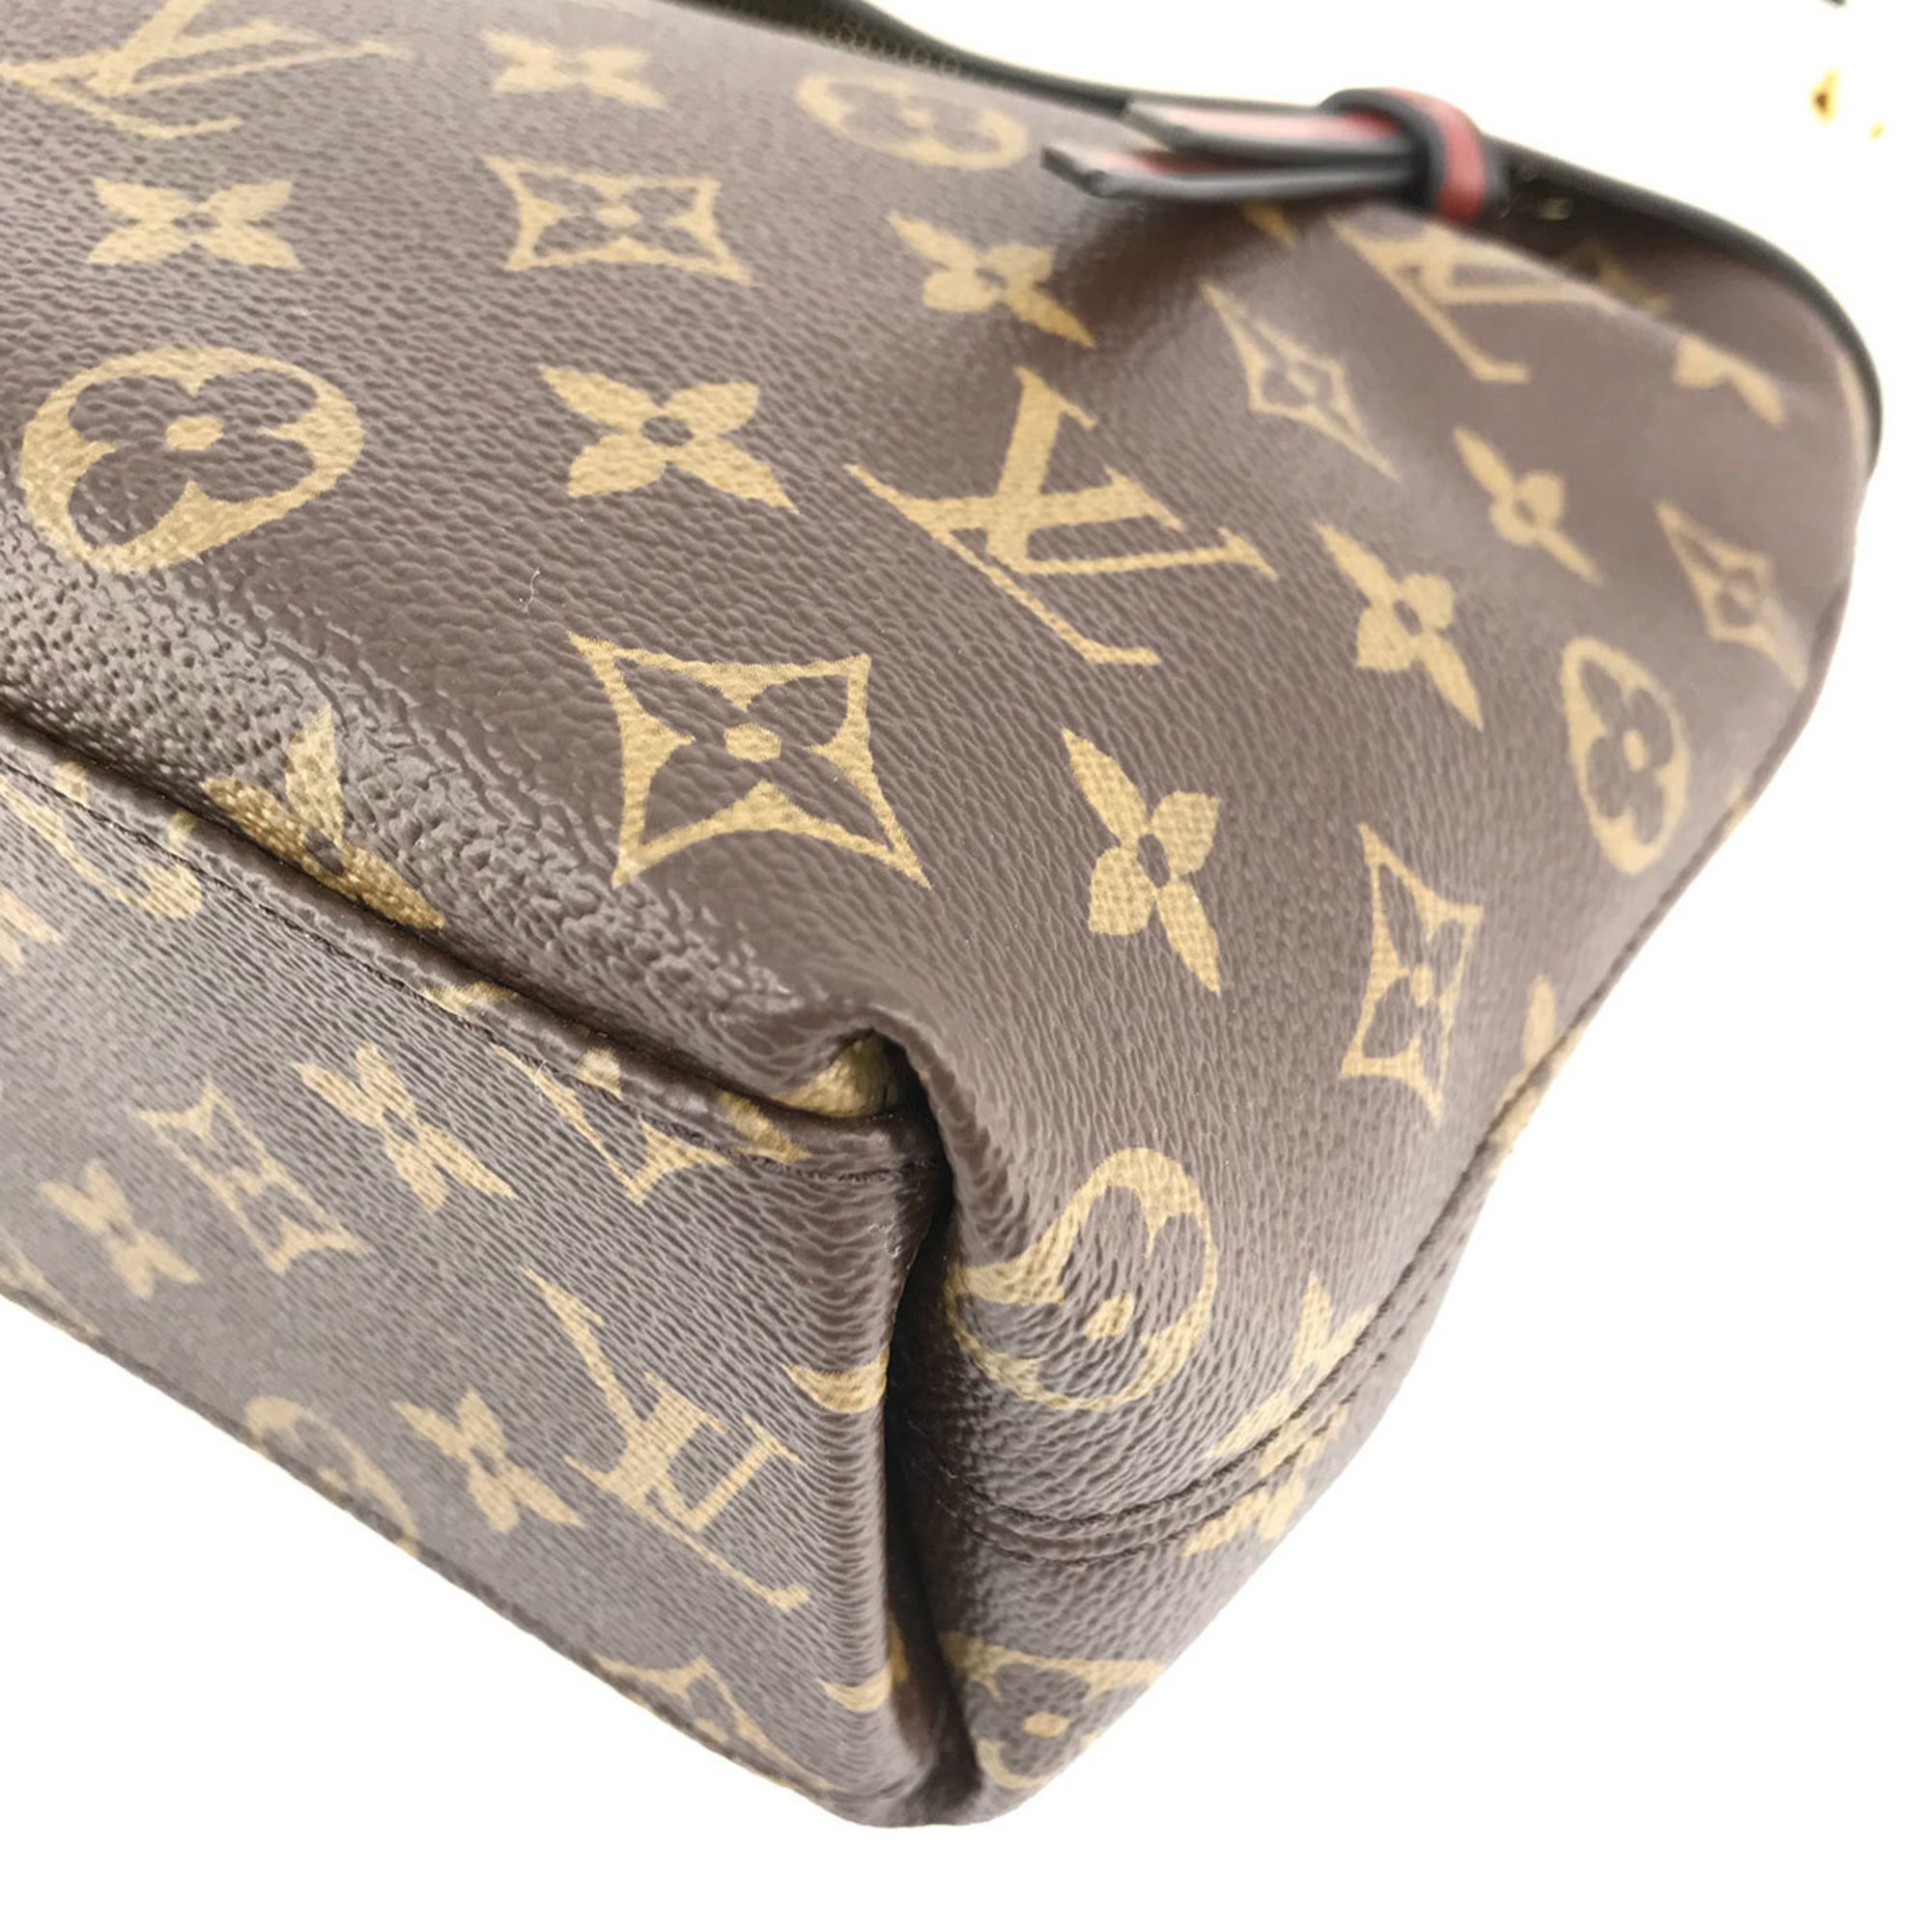 LOUIS VUITTON Tuile Ribesus Monogram 2WAY Bag Handbag Shoulder Brown Ladies Fashion M43576